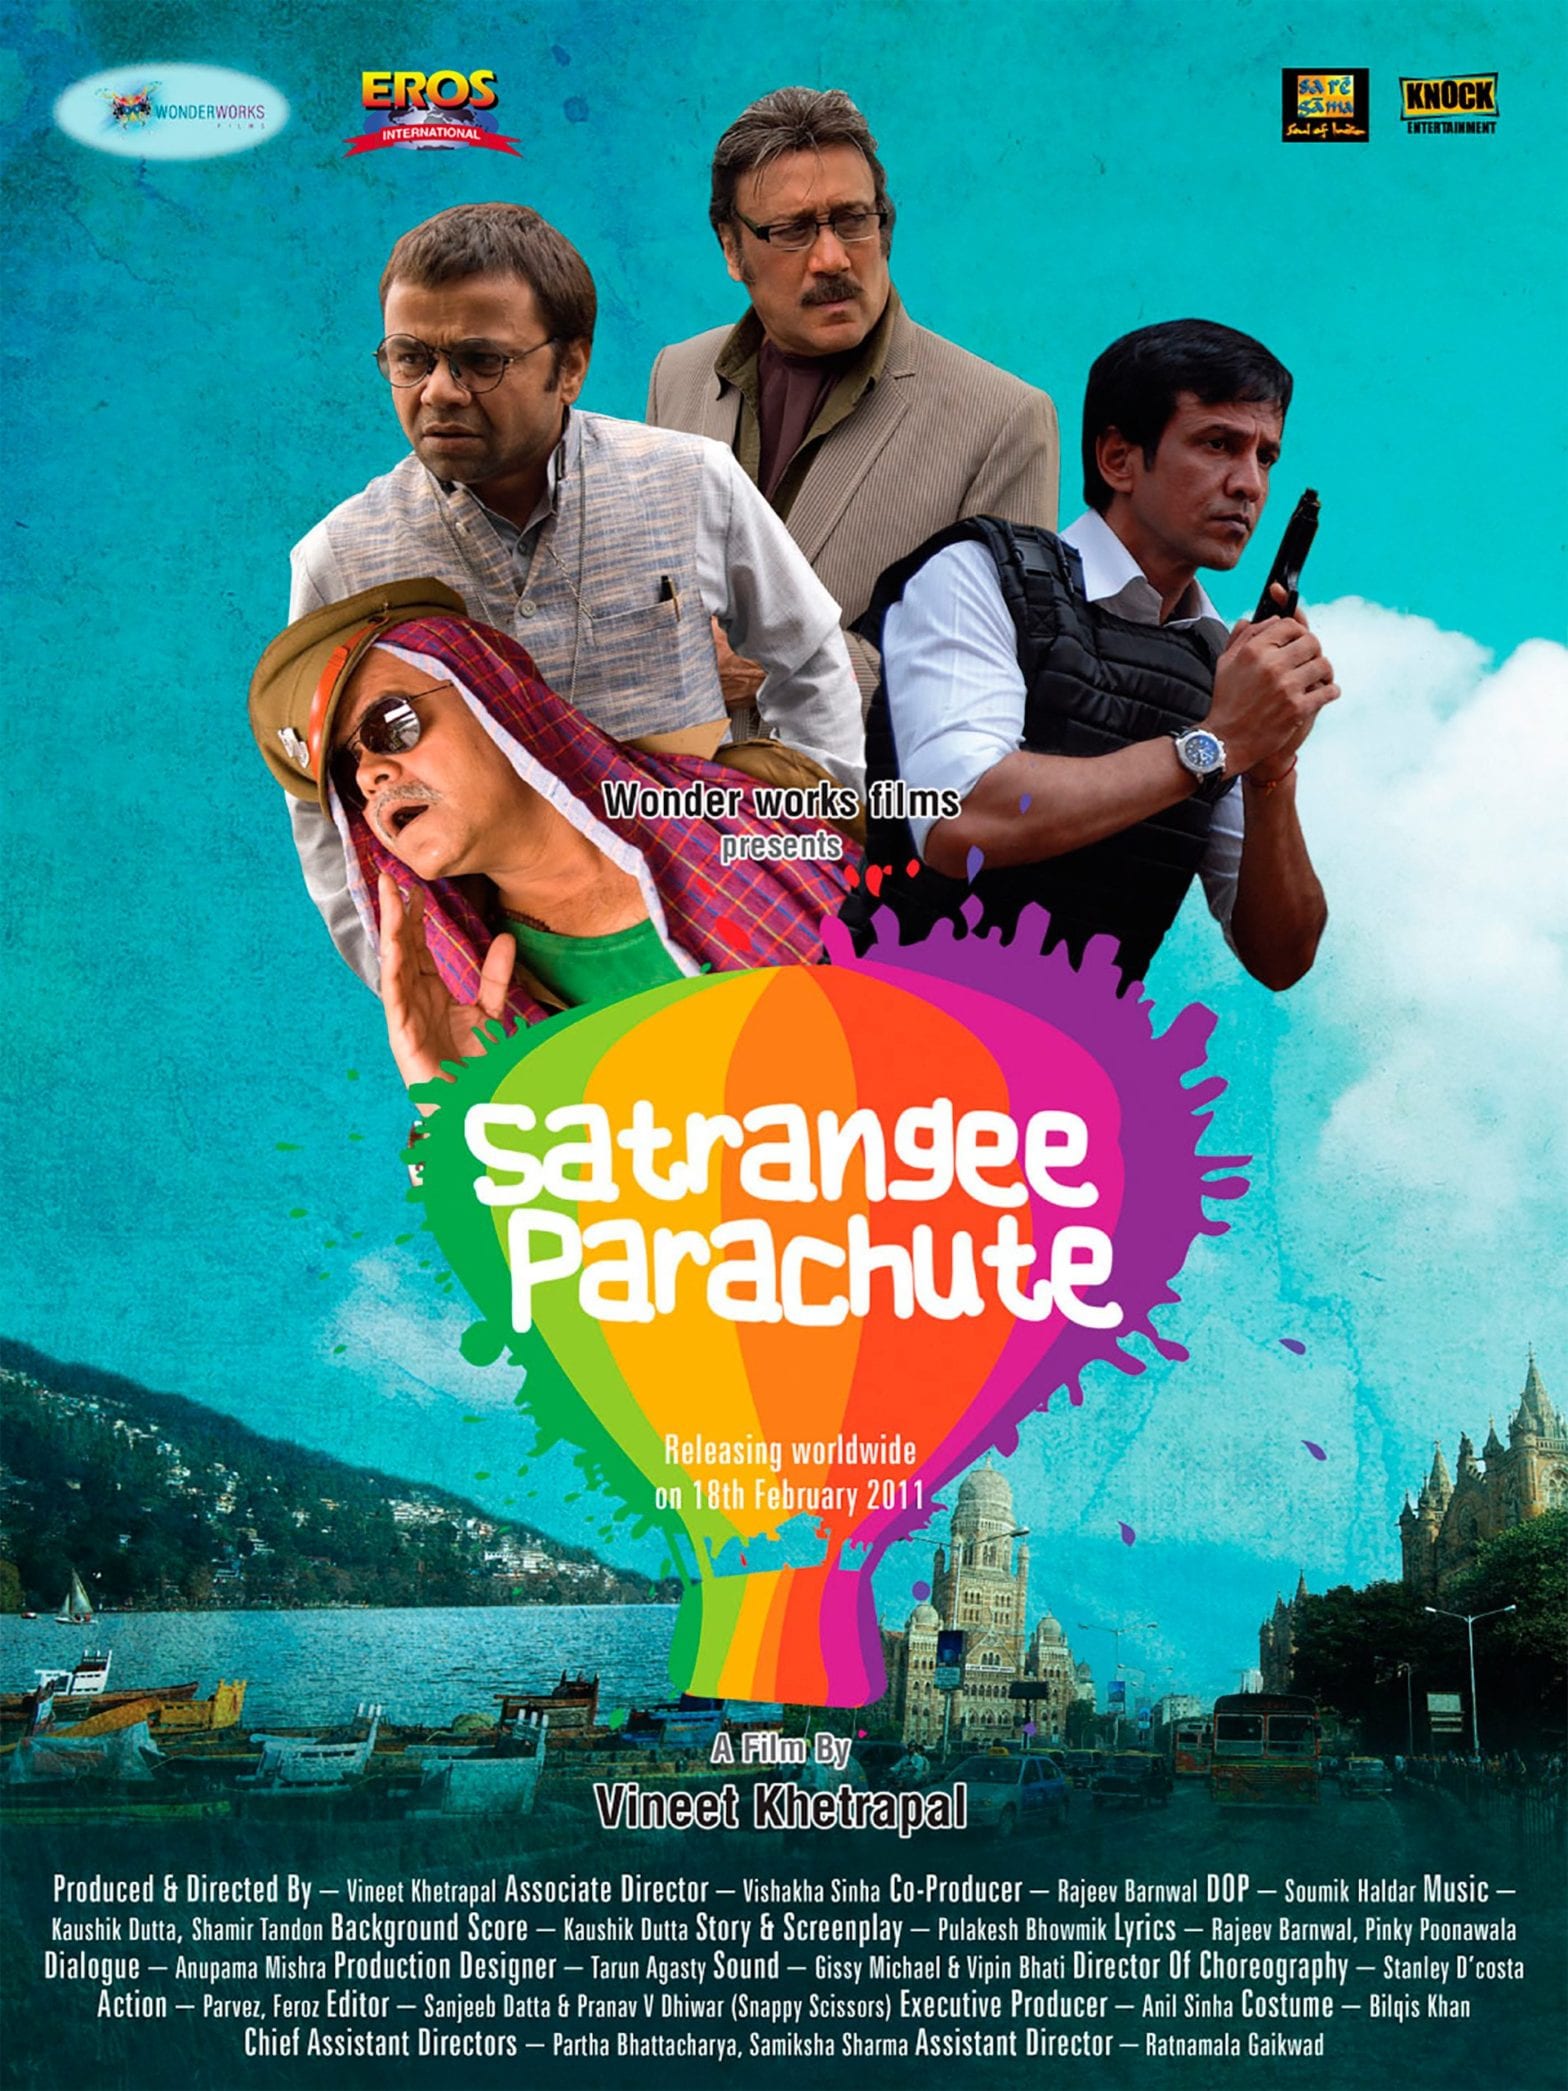 Image from the movie "Satrangee Parachute"